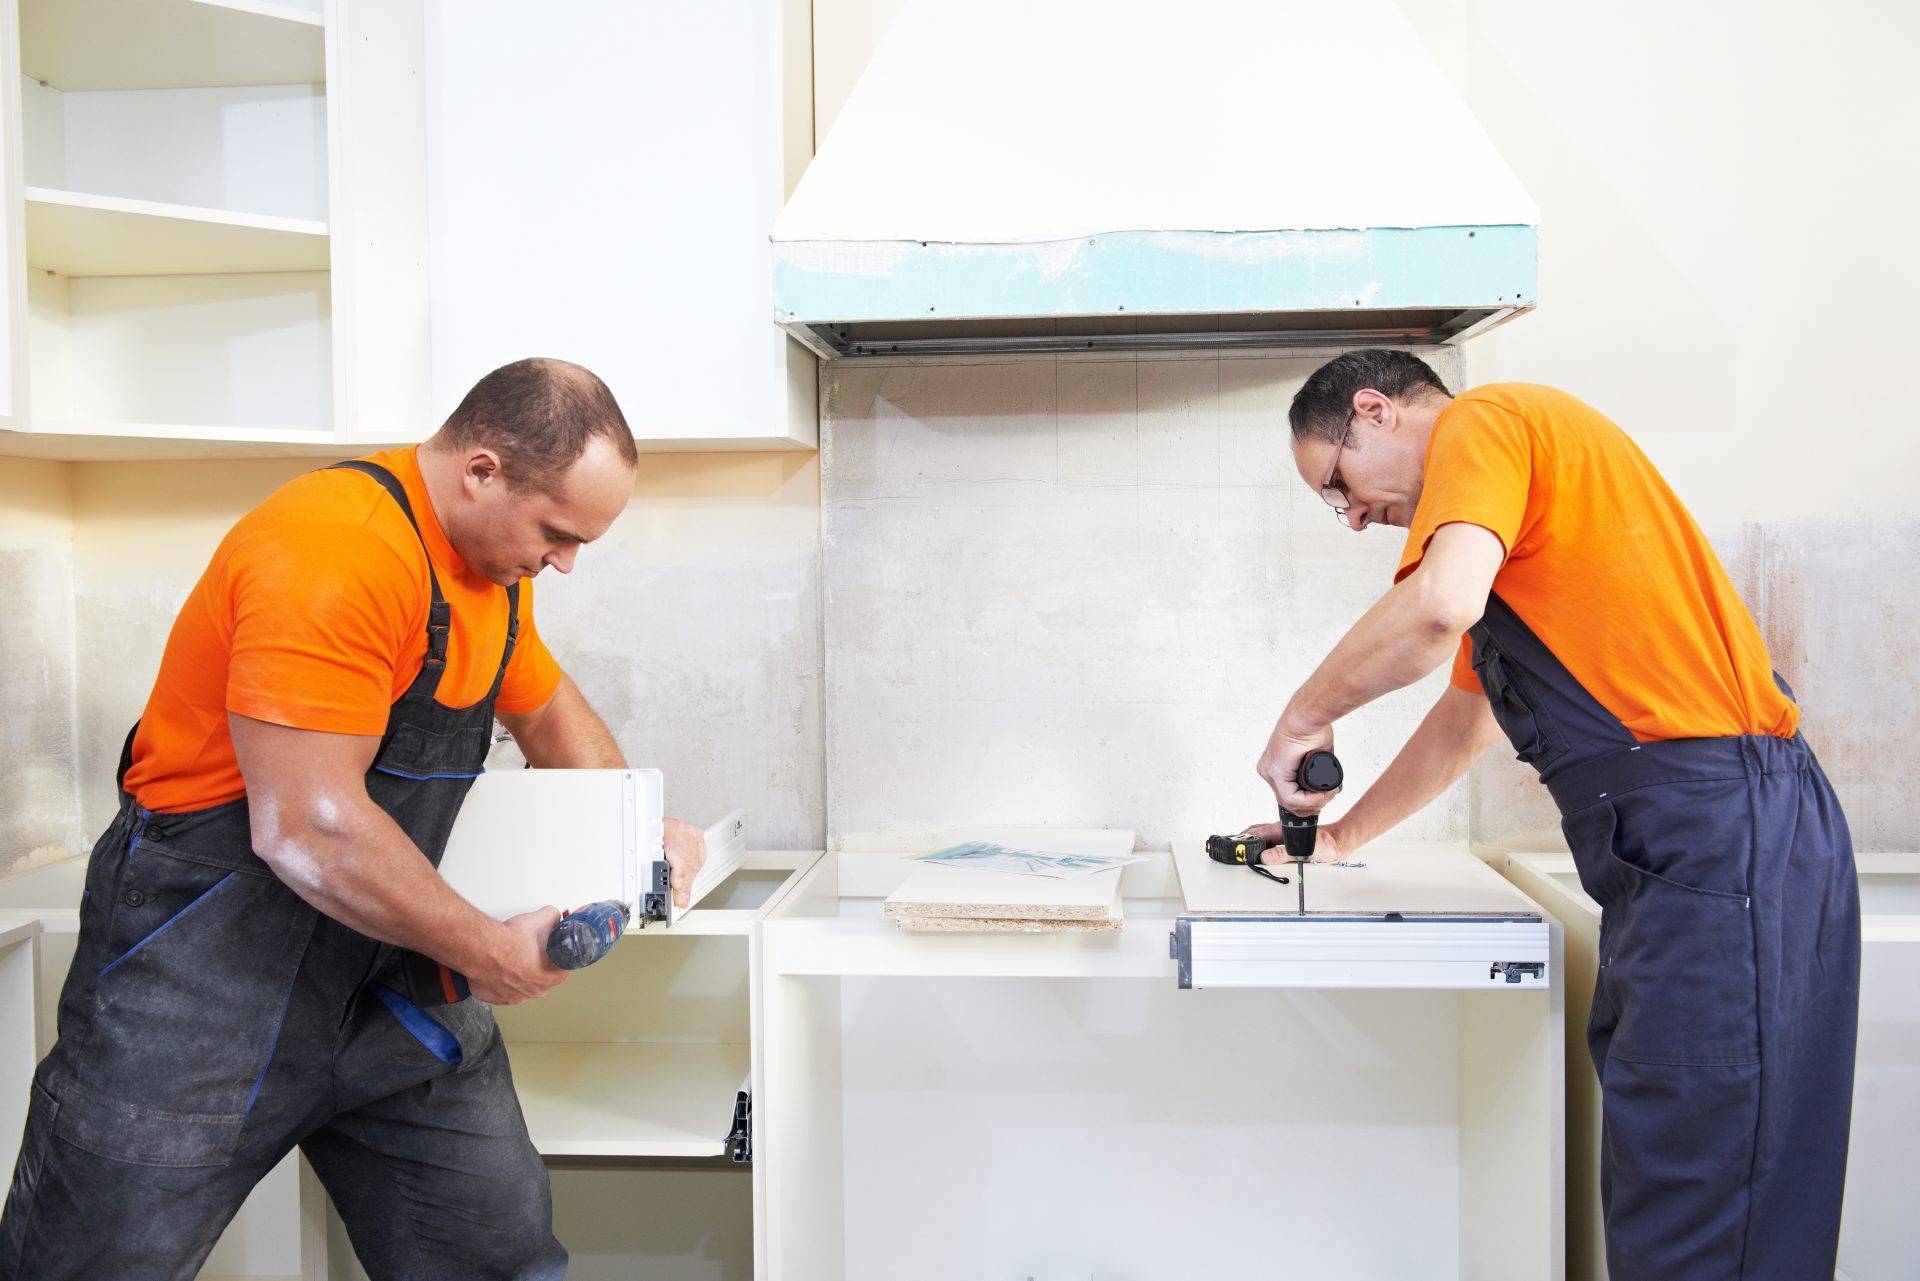 Замена кухонных фасадов: как поменять пленку на мебельной стенке, новые дверцы для старой кухни своими руками, как заменить стекла в шкафу